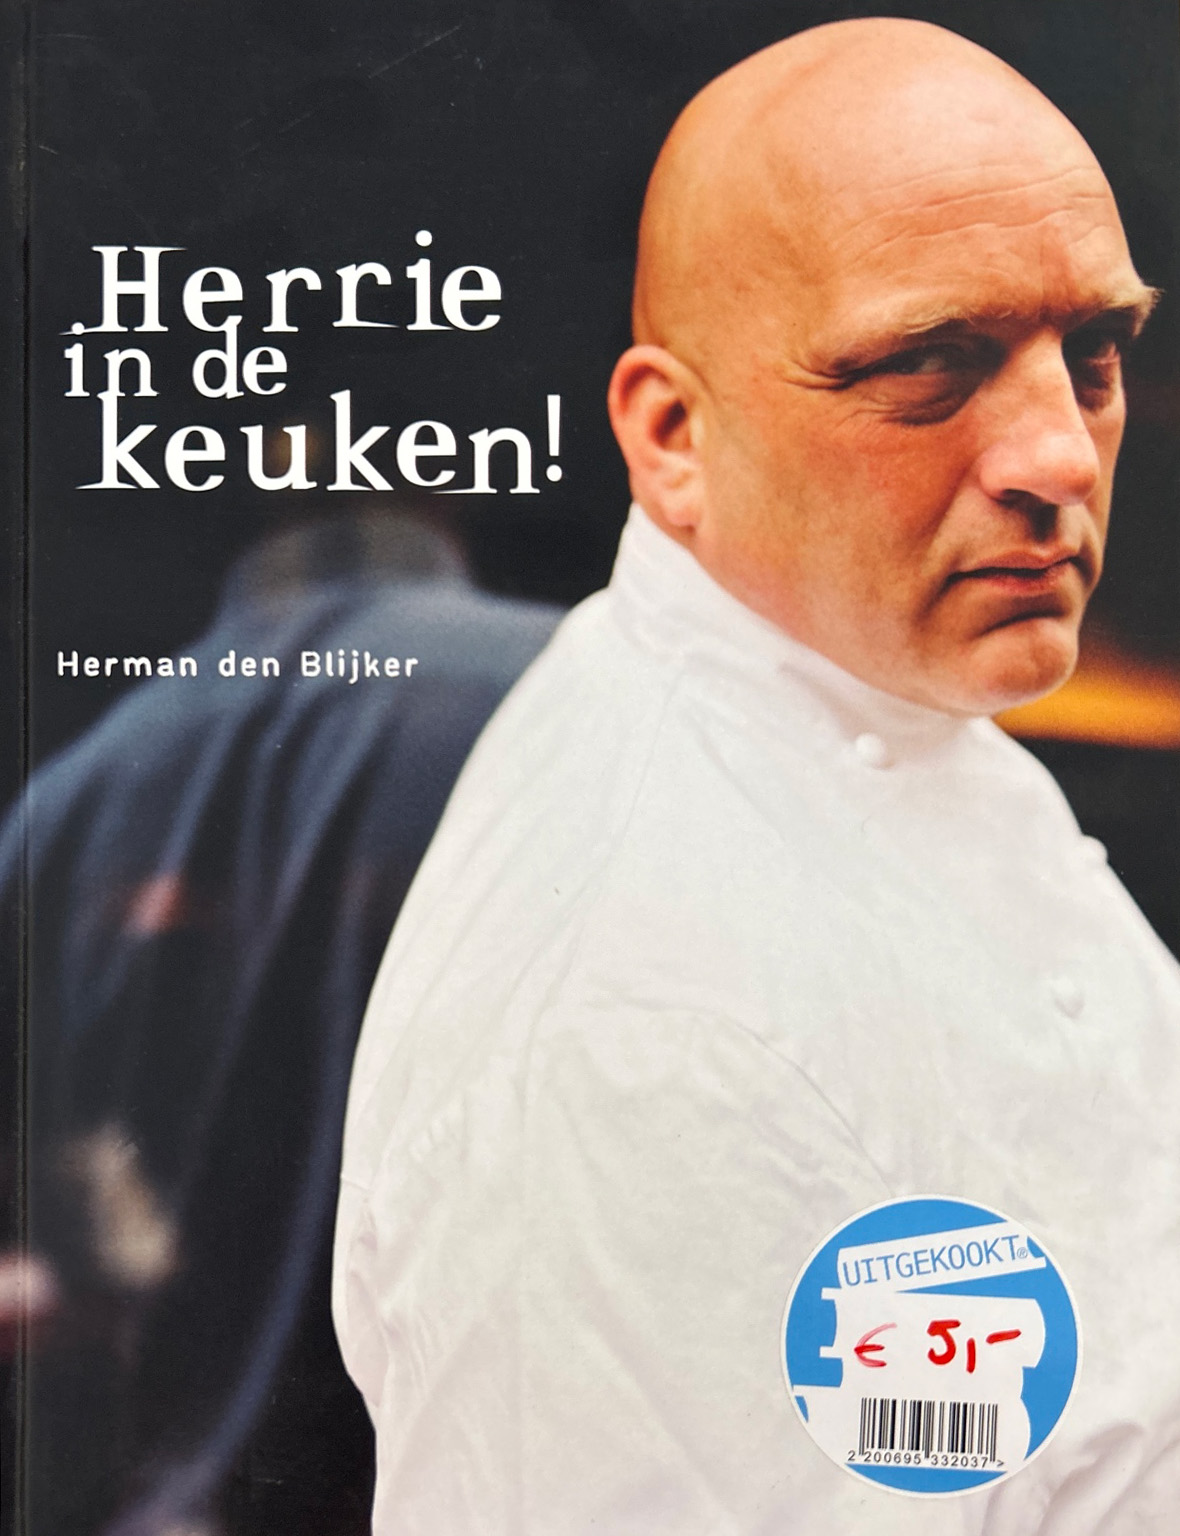 Herrie in de keuken! – Herman den Blijker